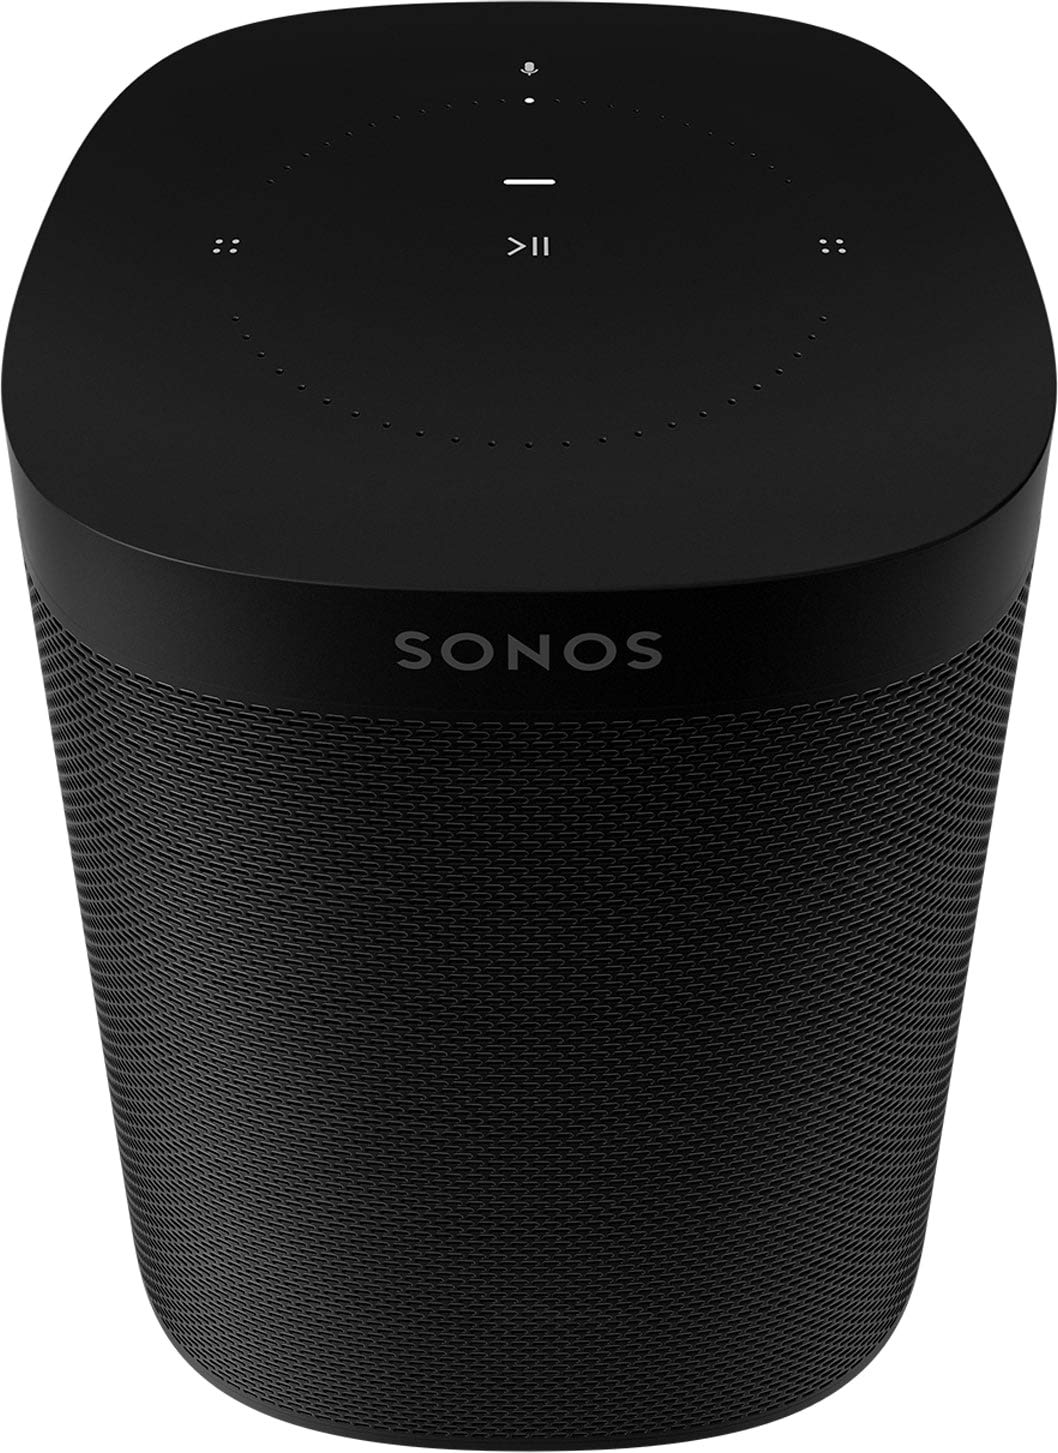 Sonos Gen 2 Bluetooth Speaker